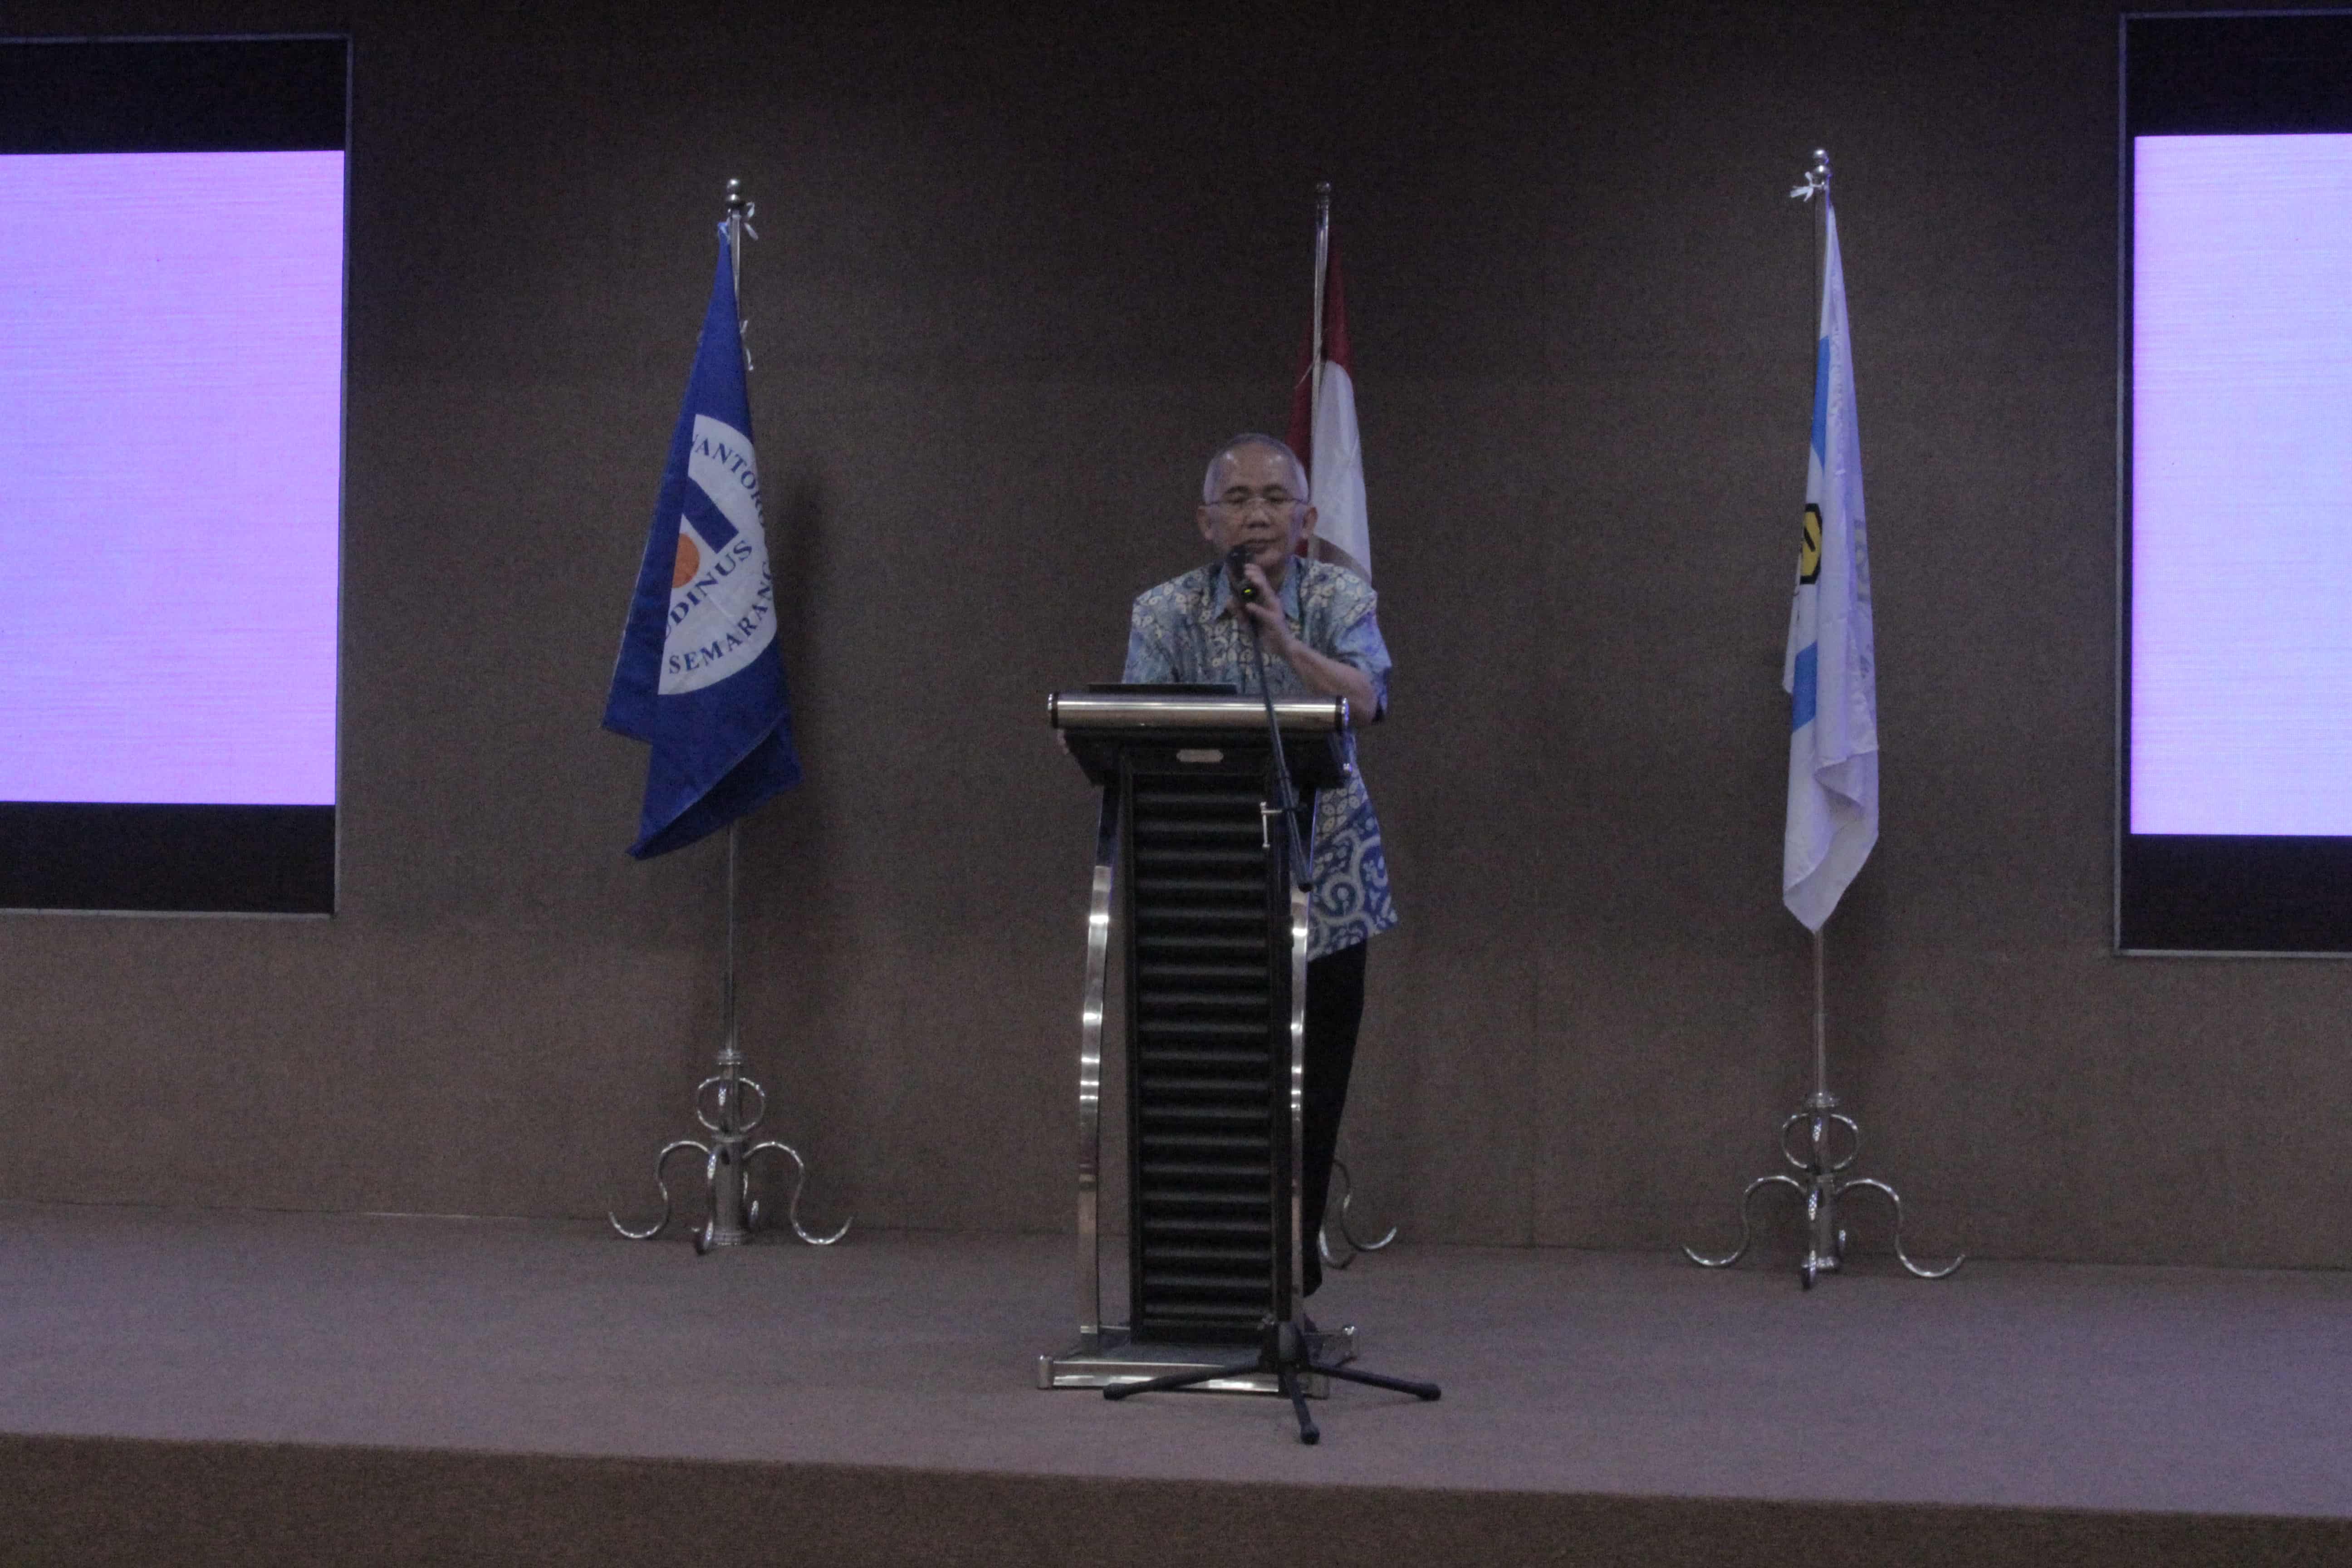 Sambutan dan pengarahan bapak rektor Universitas Dian Nuswantoro